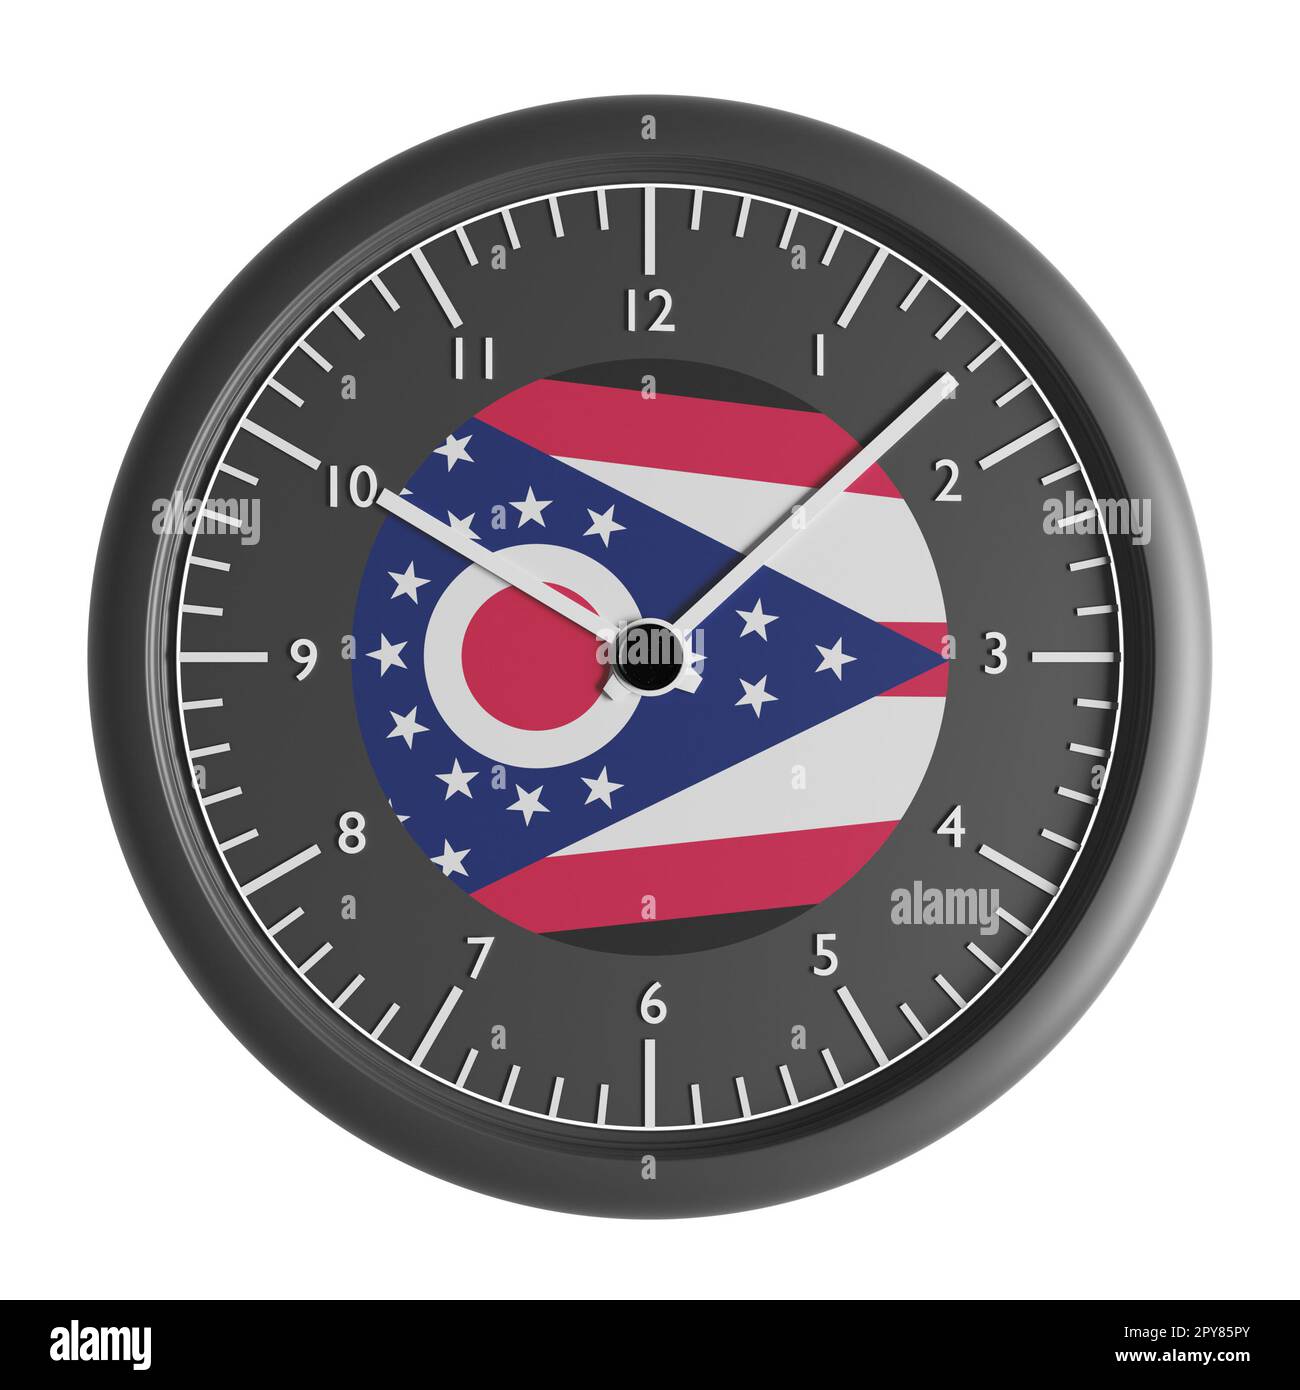 Signes et symboles. Elément de conception. 3D illustration. Horloge murale avec le drapeau de l'Ohio Banque D'Images